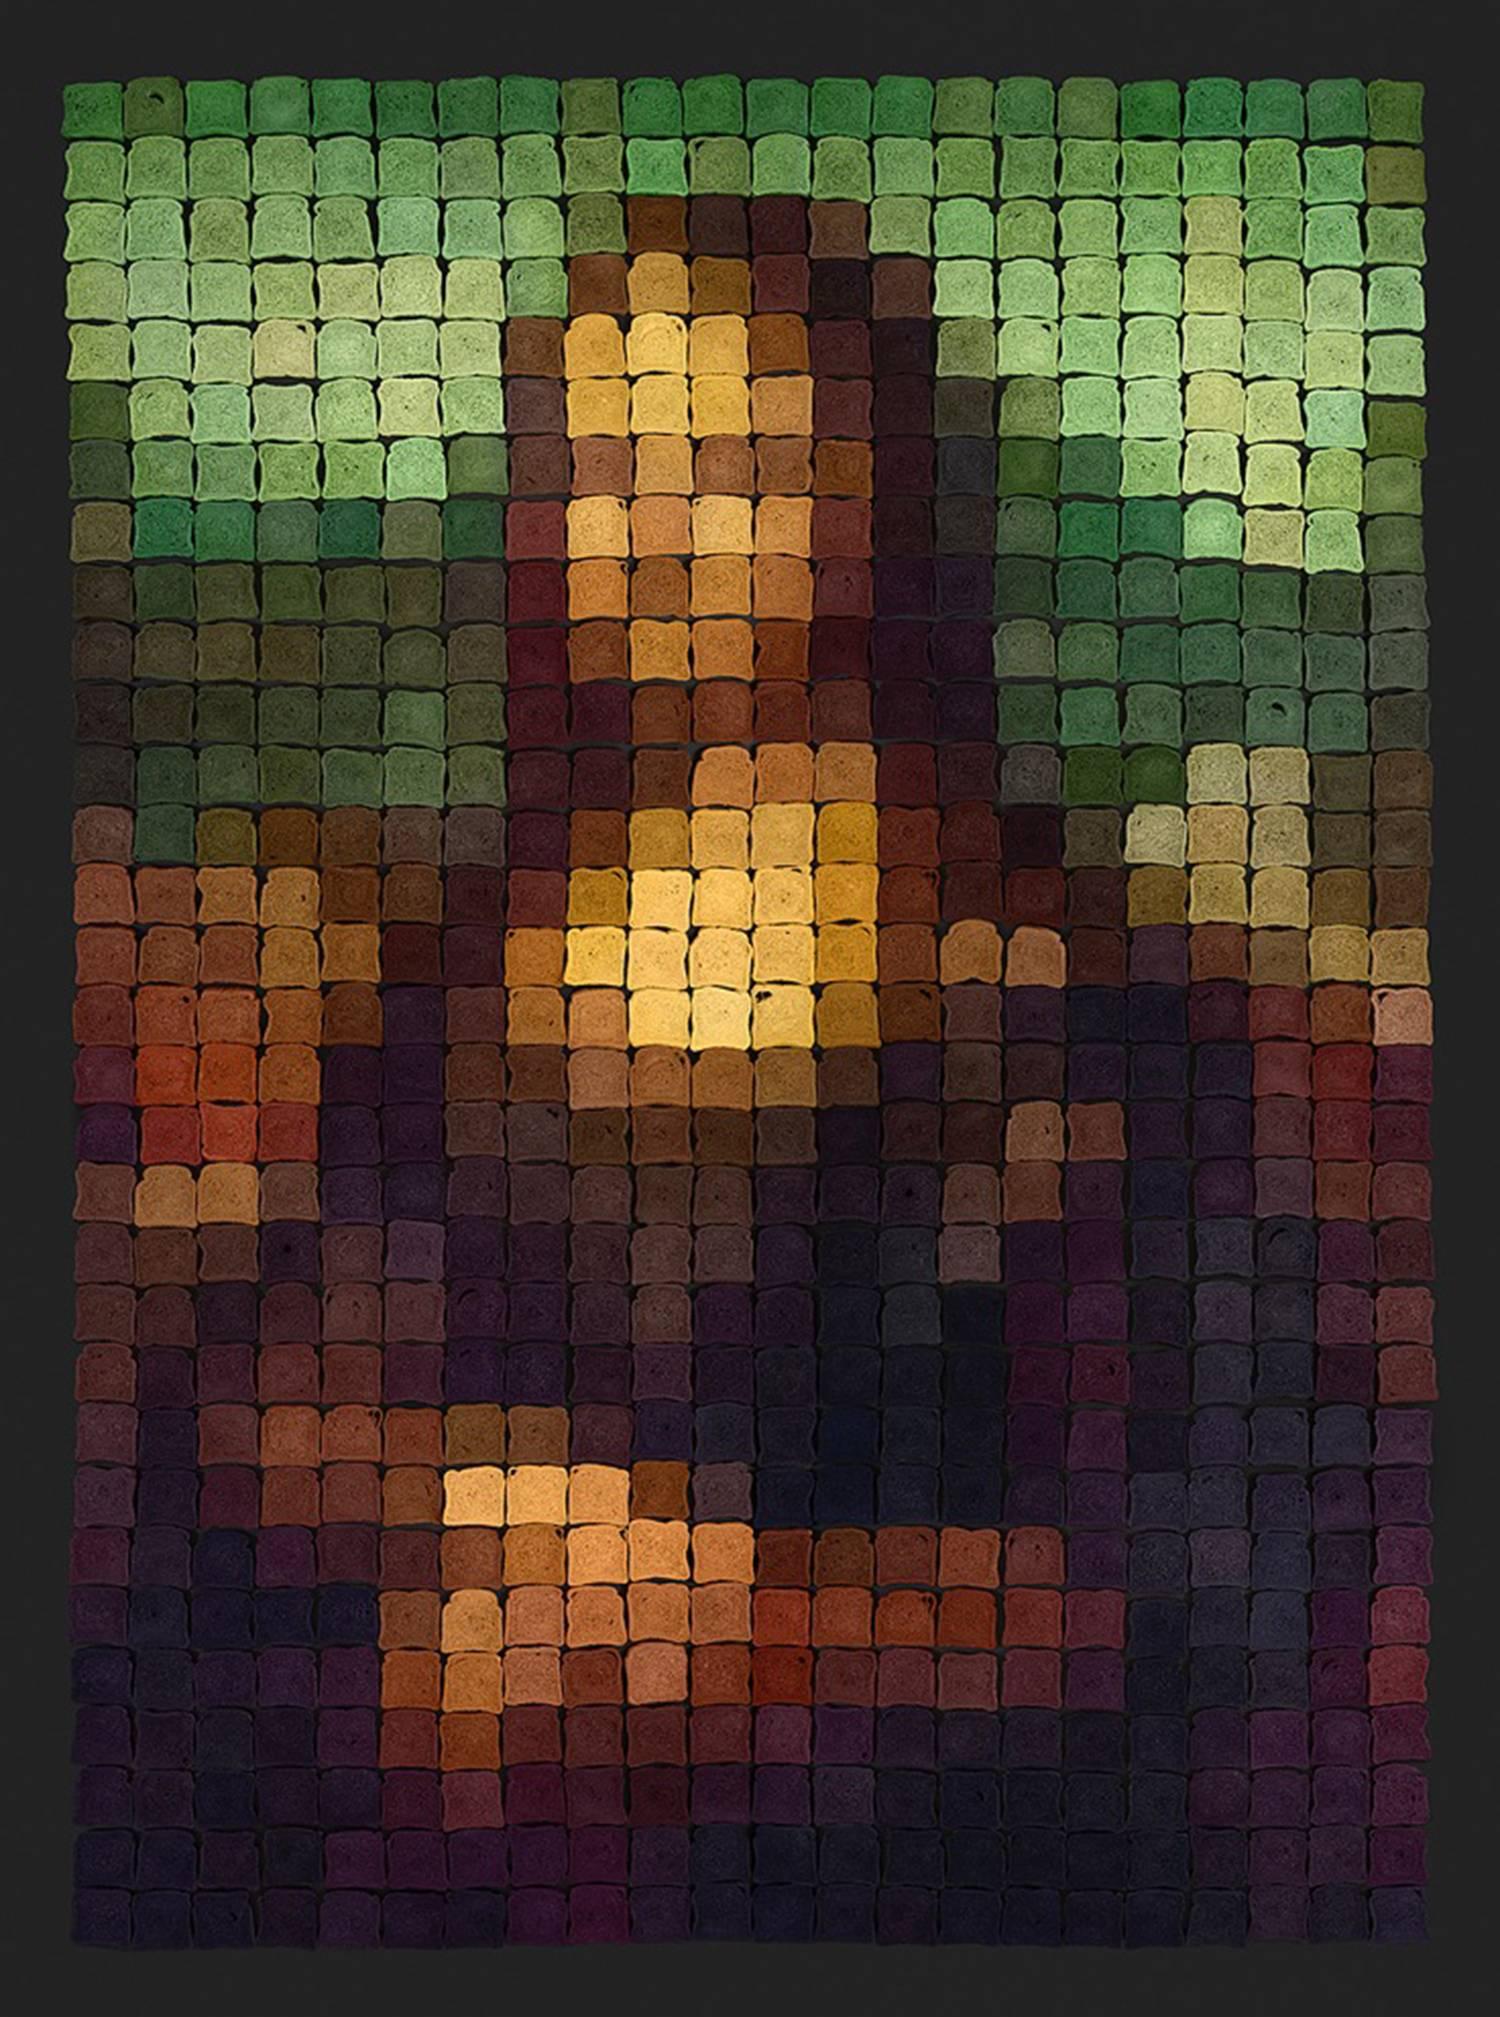 Мона Лиза пиксель арт 32 на 32